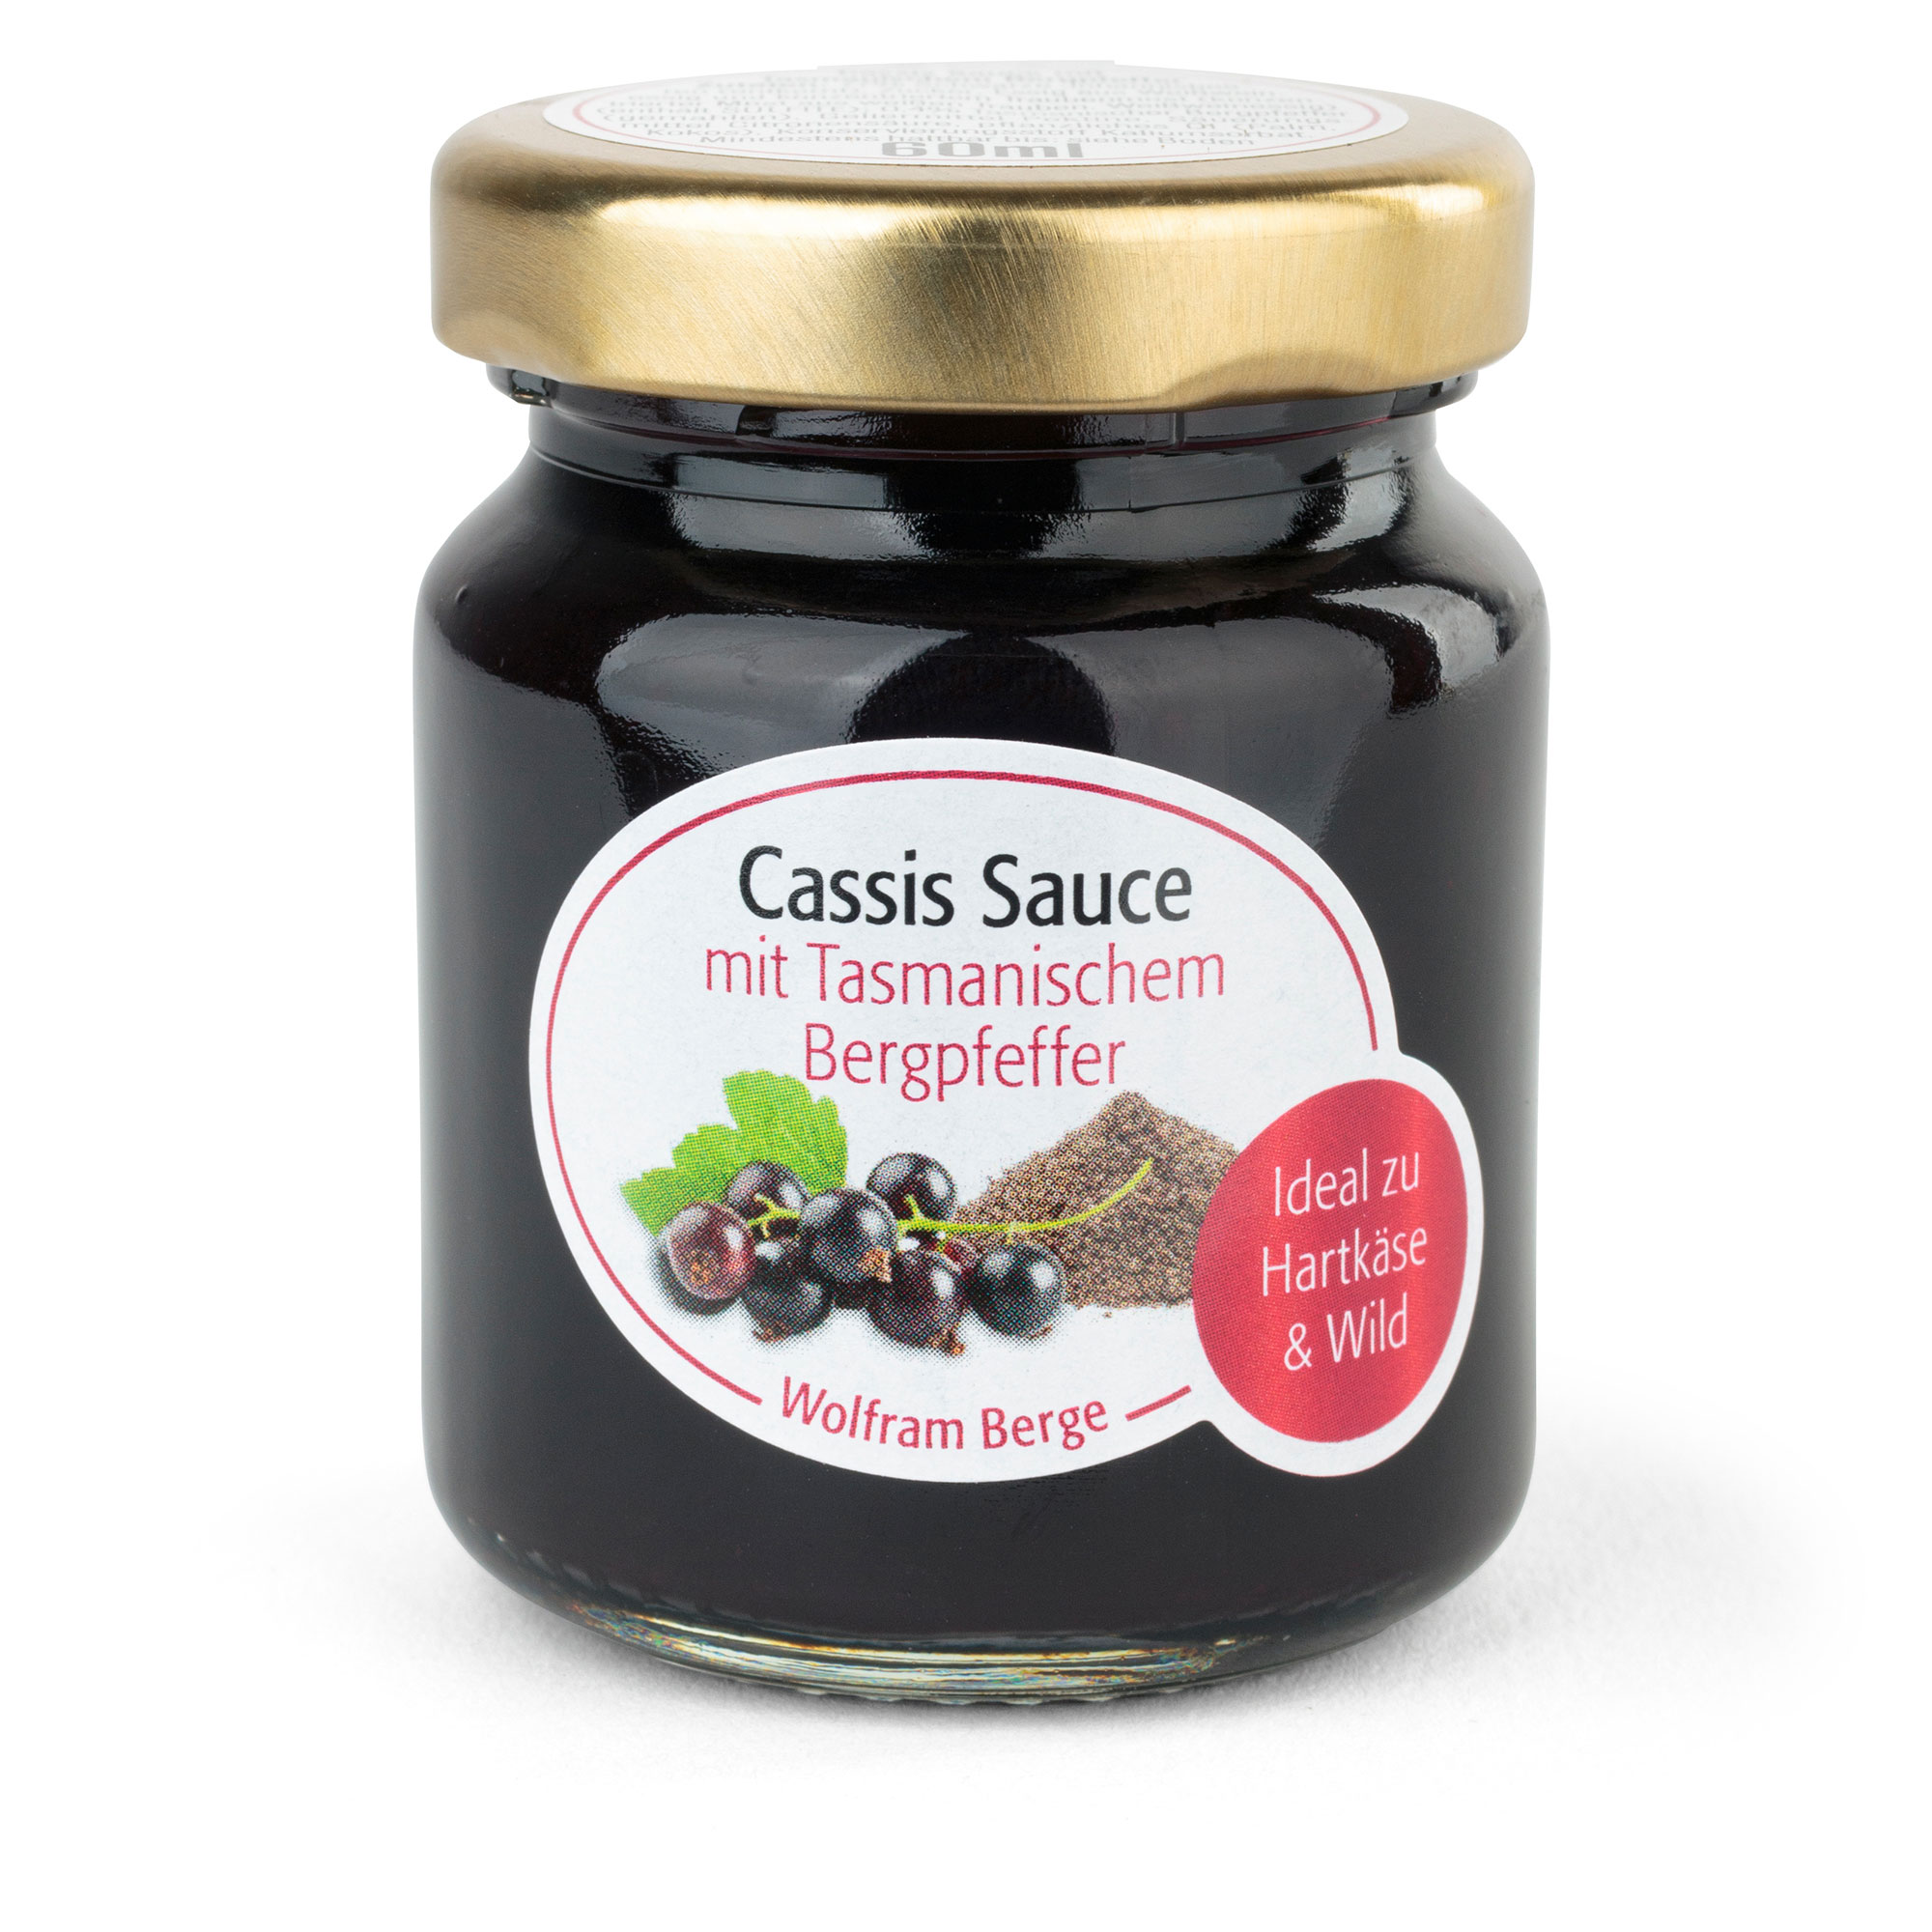 Cassis Sauce mit Tasmanischem Bergpfeffer